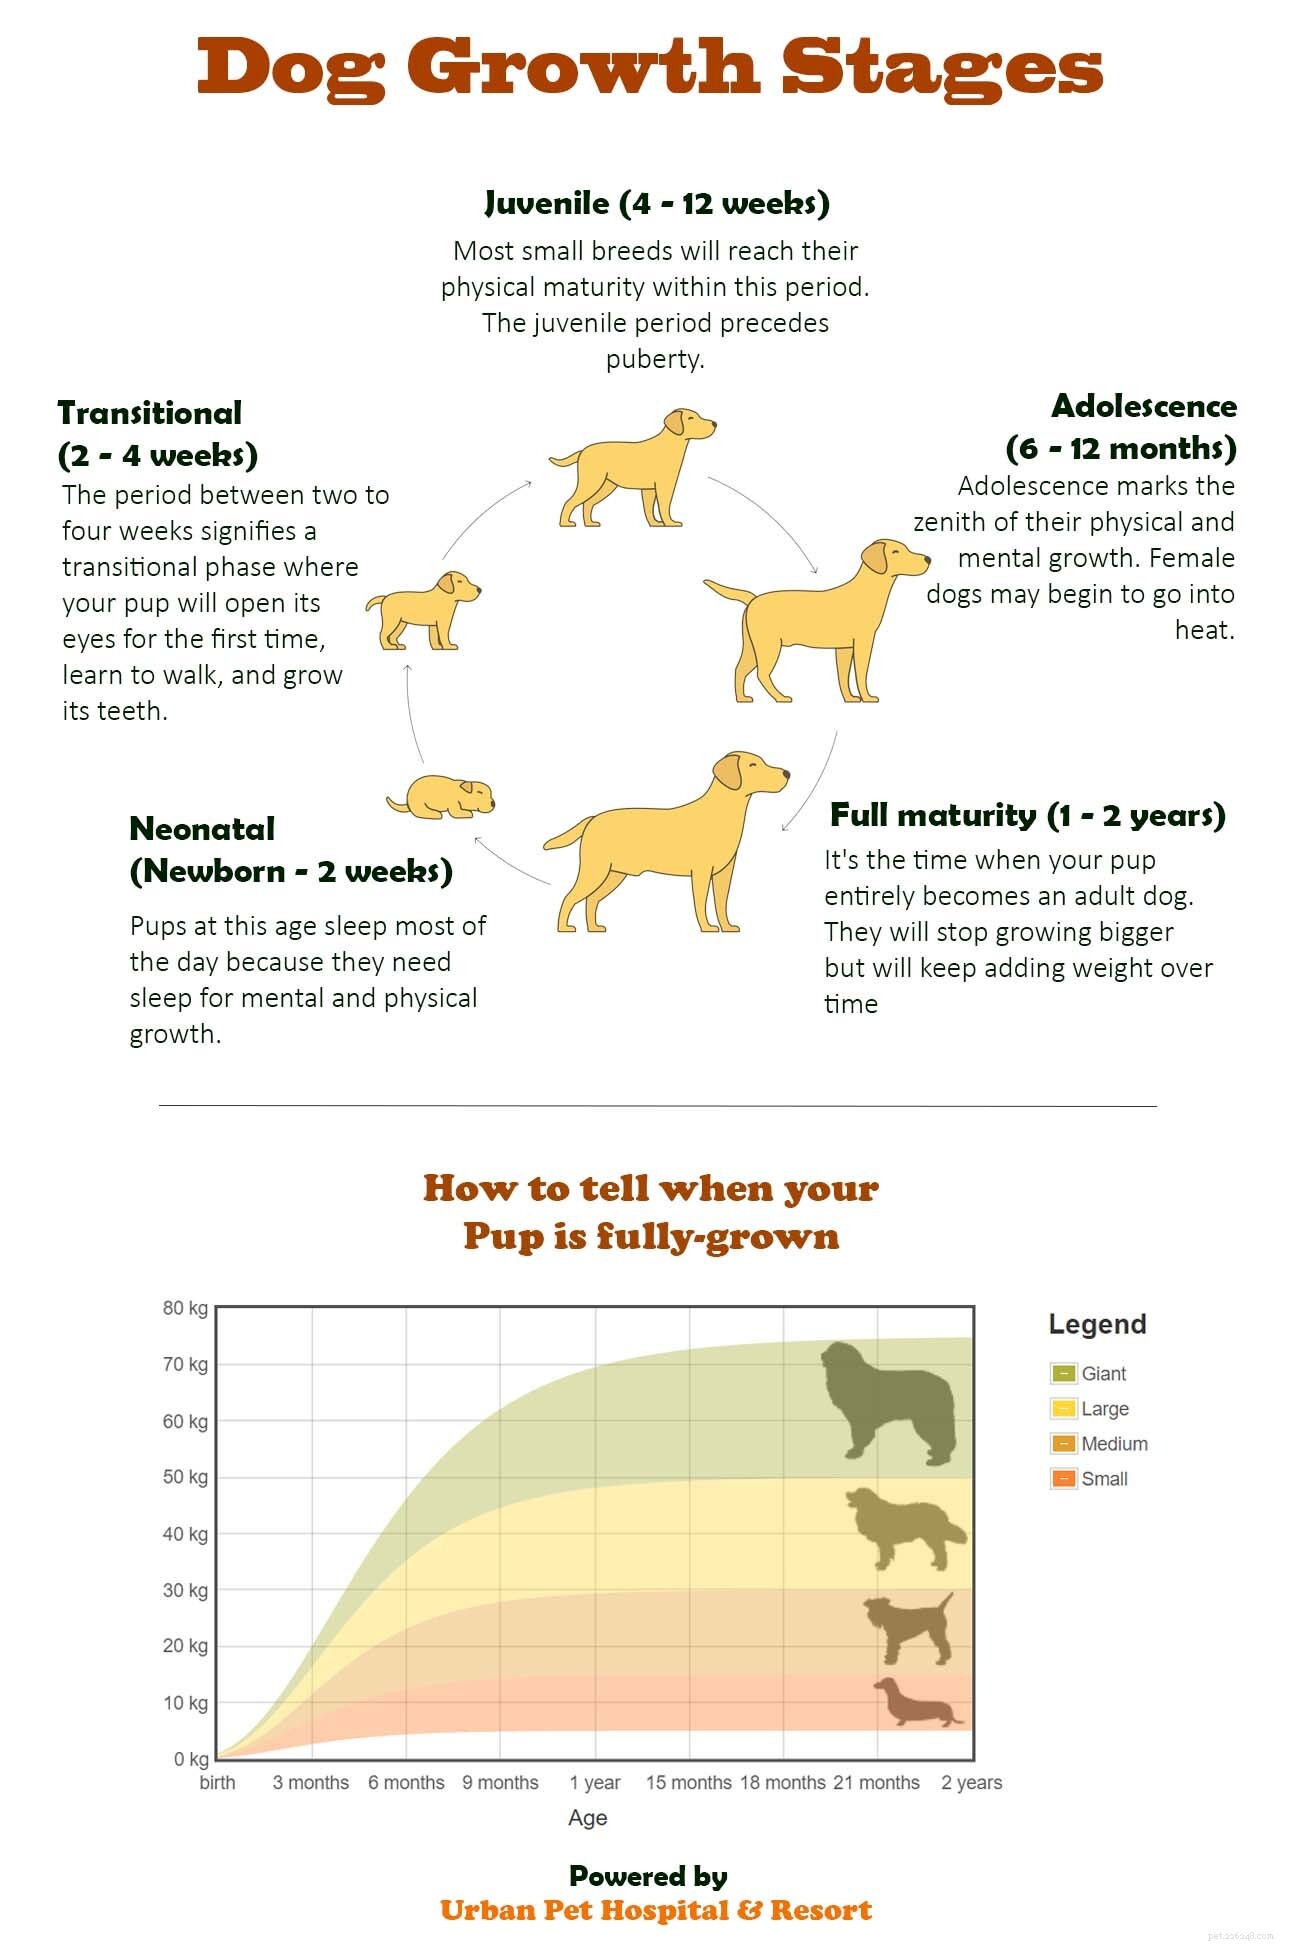 A che età i cani smettono di crescere?